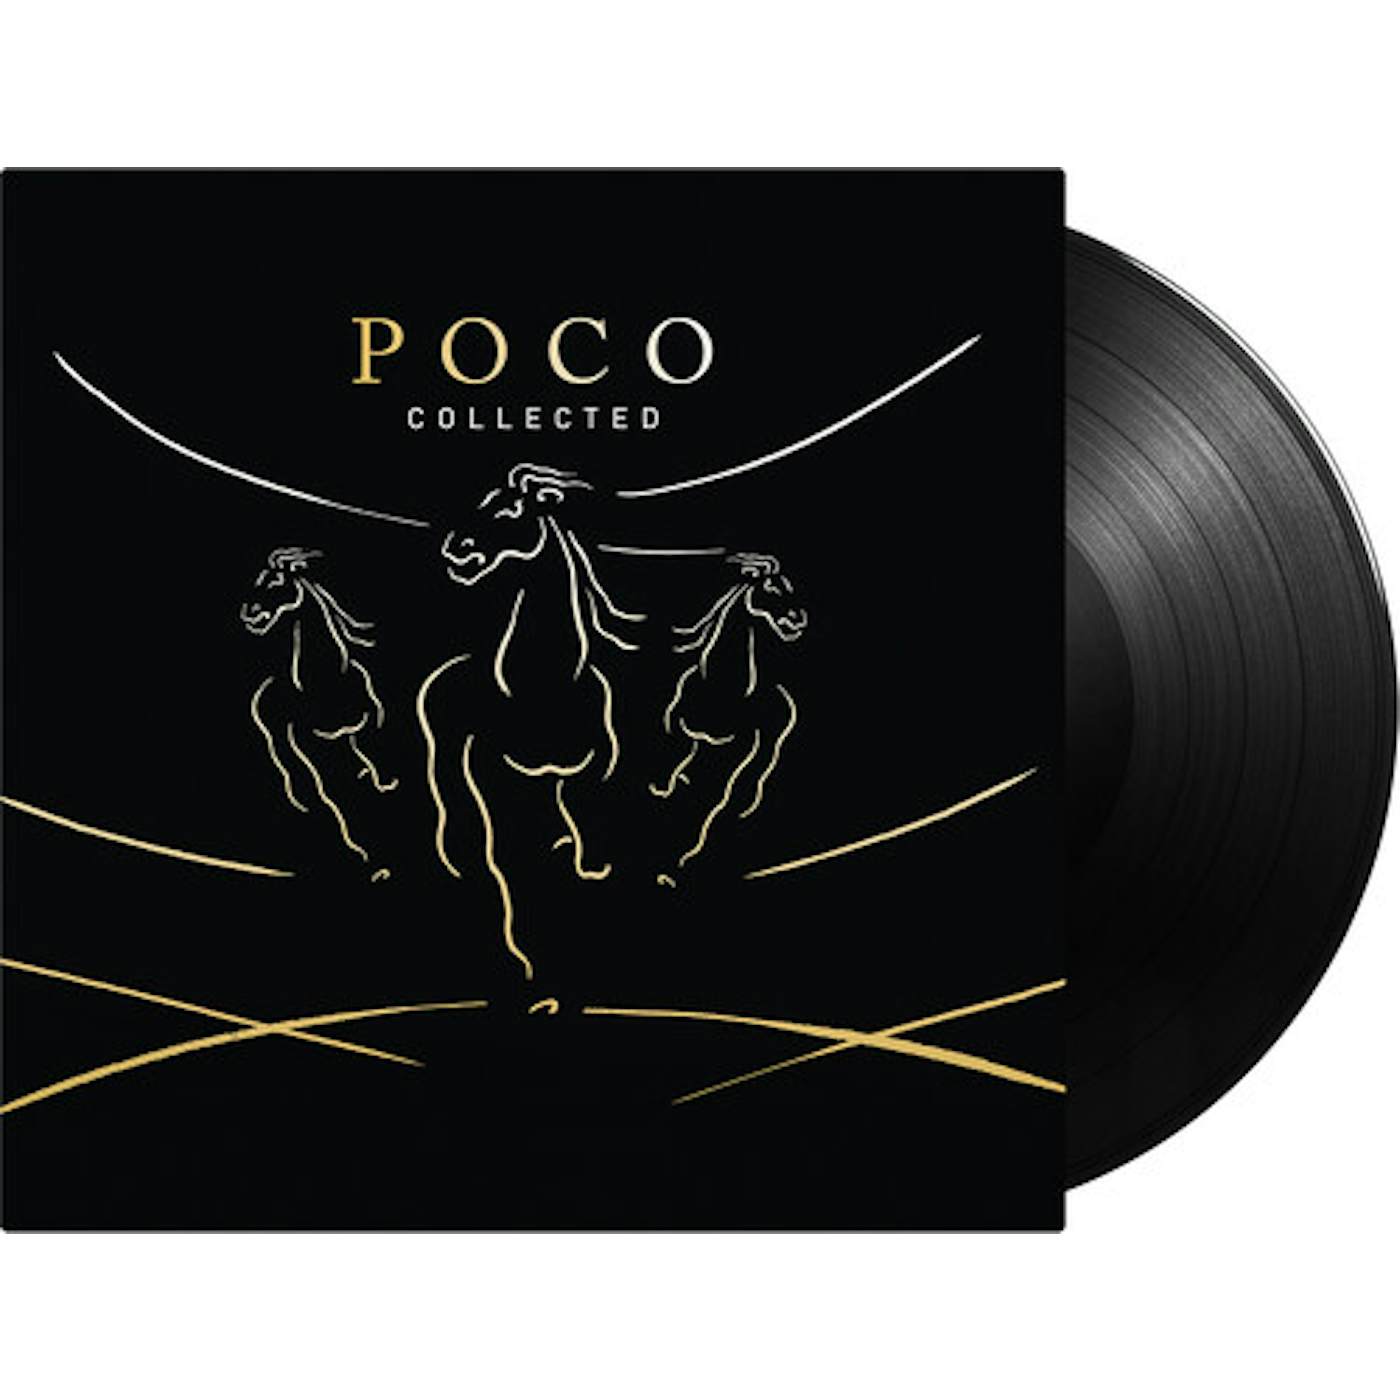 Poco COLLECTED Vinyl Record